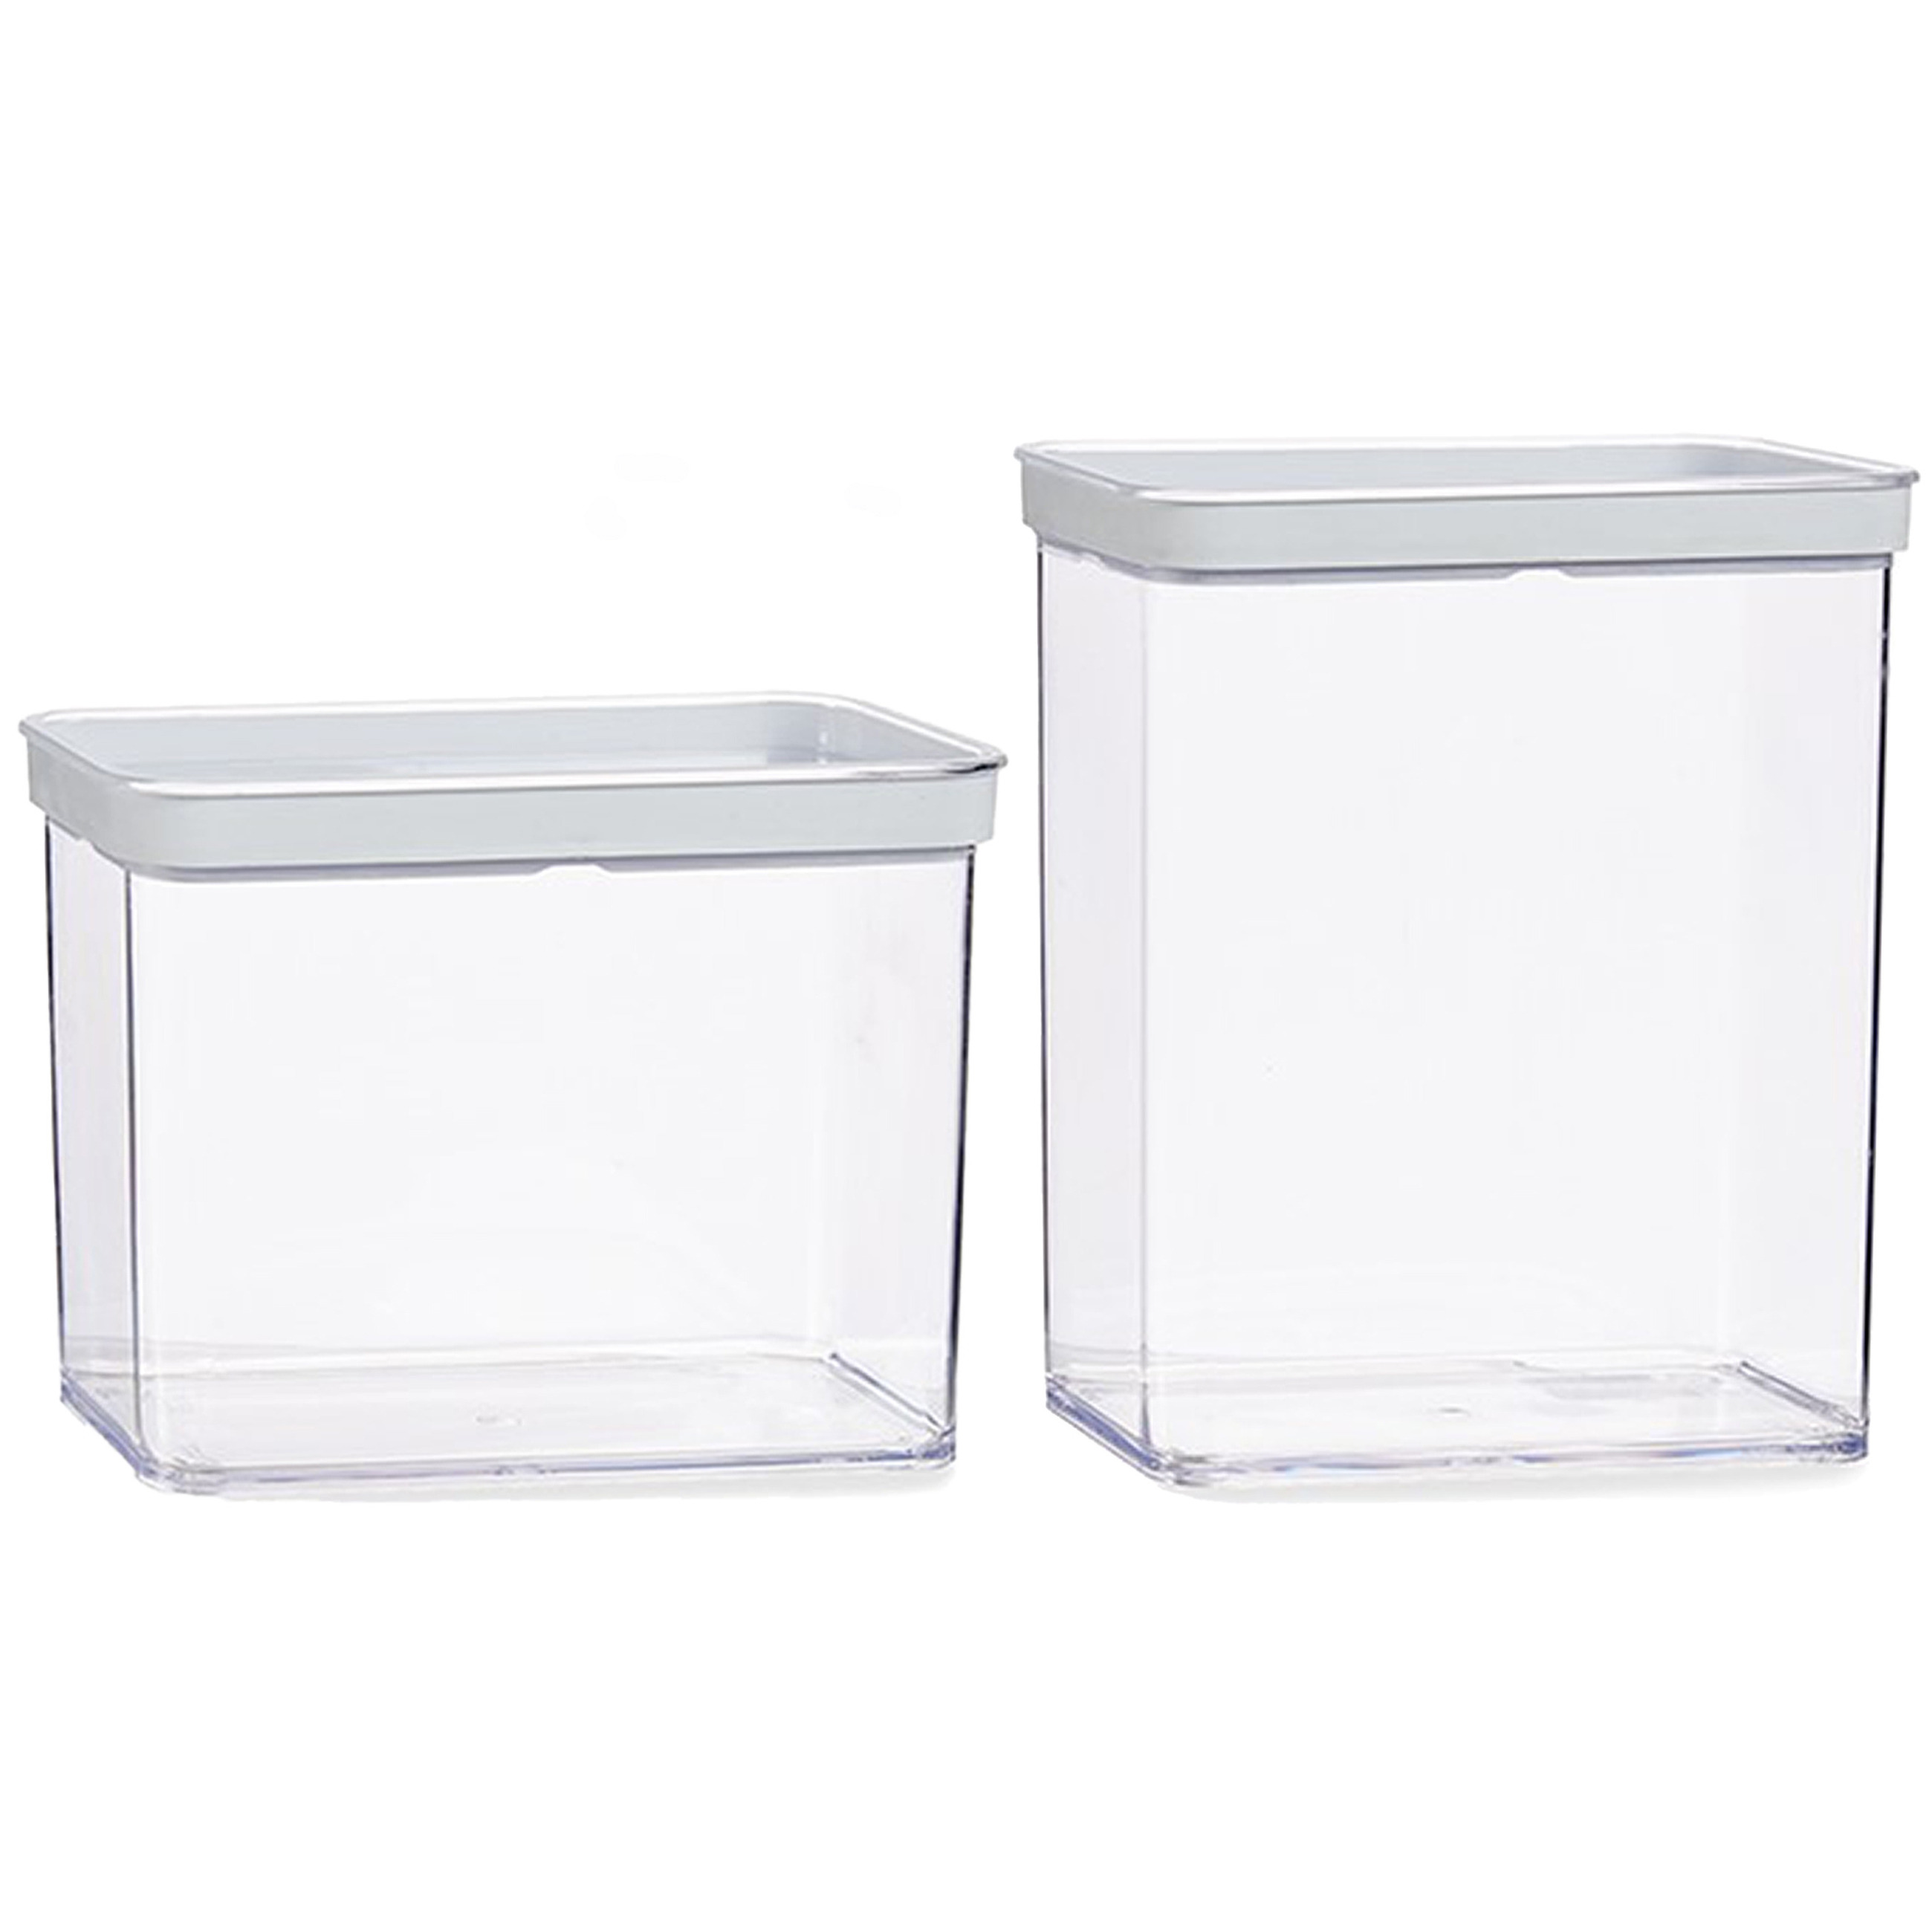 Gondol Plastics 4x stuks keuken voorraad potten/bakjes set met deksel 2.2 en 3.3 liter -